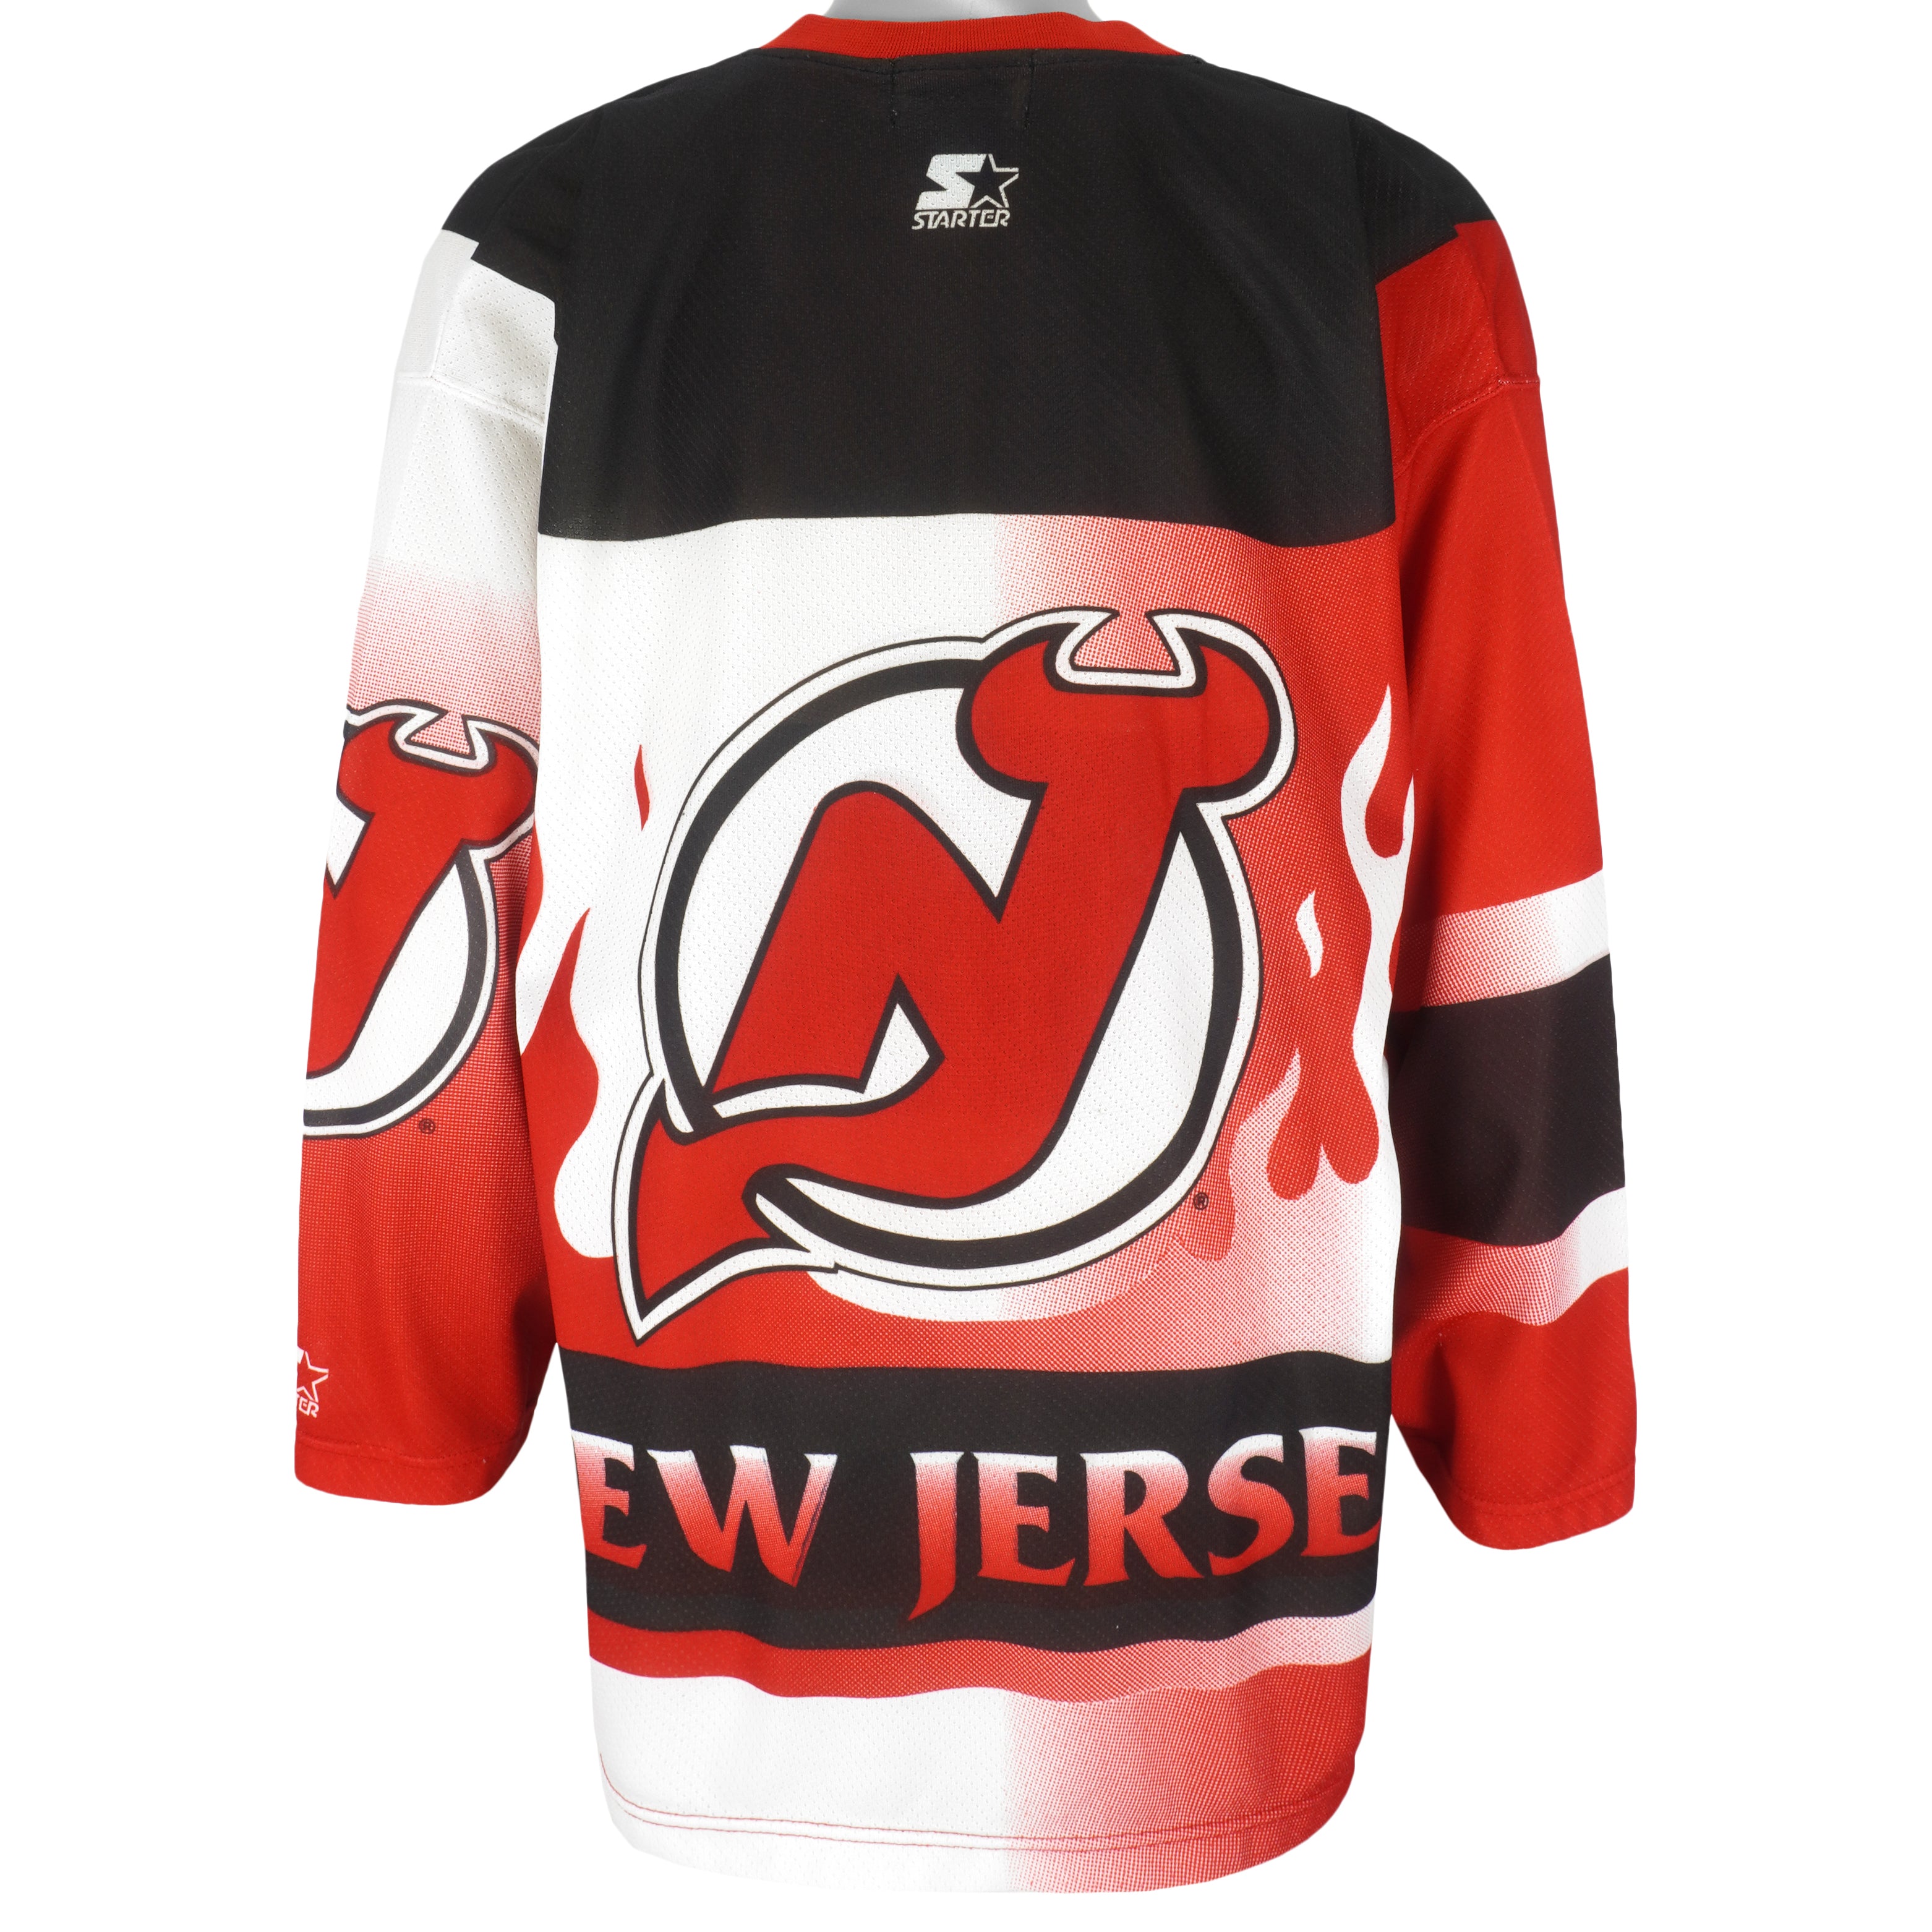 New Jersey Devils Gear, Devils Heritage Jerseys, New Jersey Devils Apparel